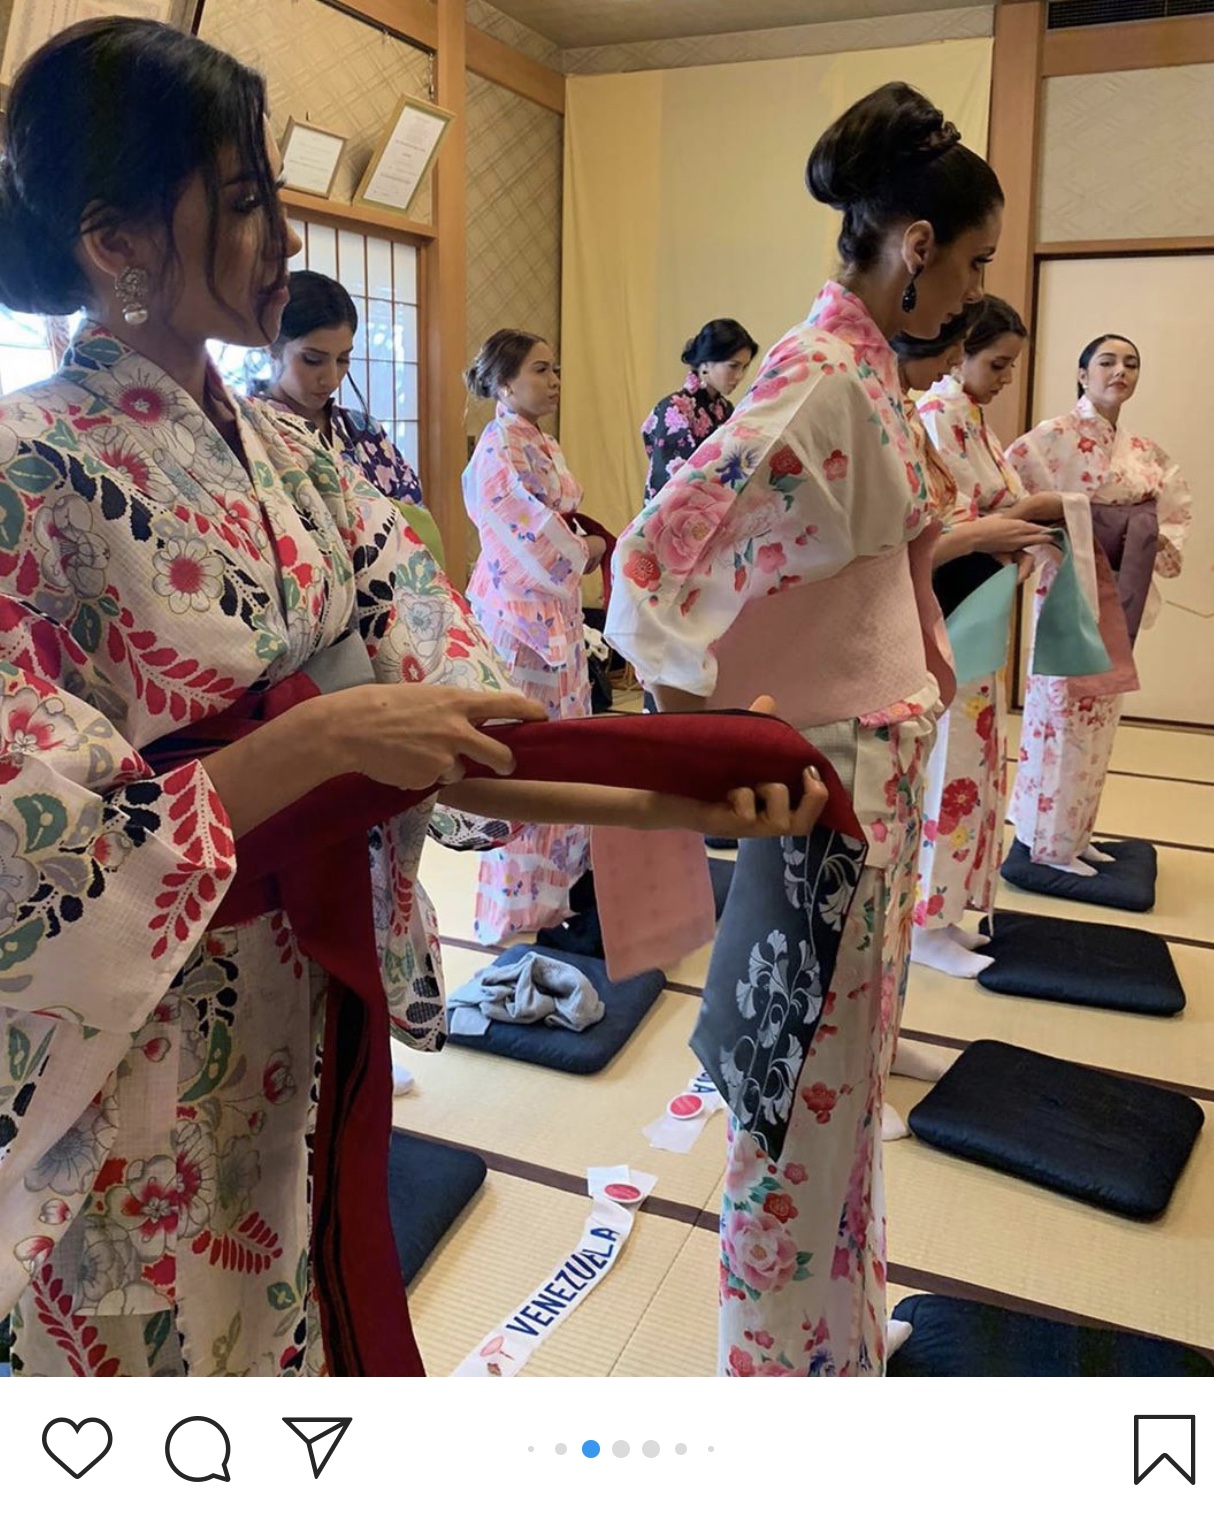 candidatas a miss international 2019 usando tradicional traje tipico japones. I4MFjS